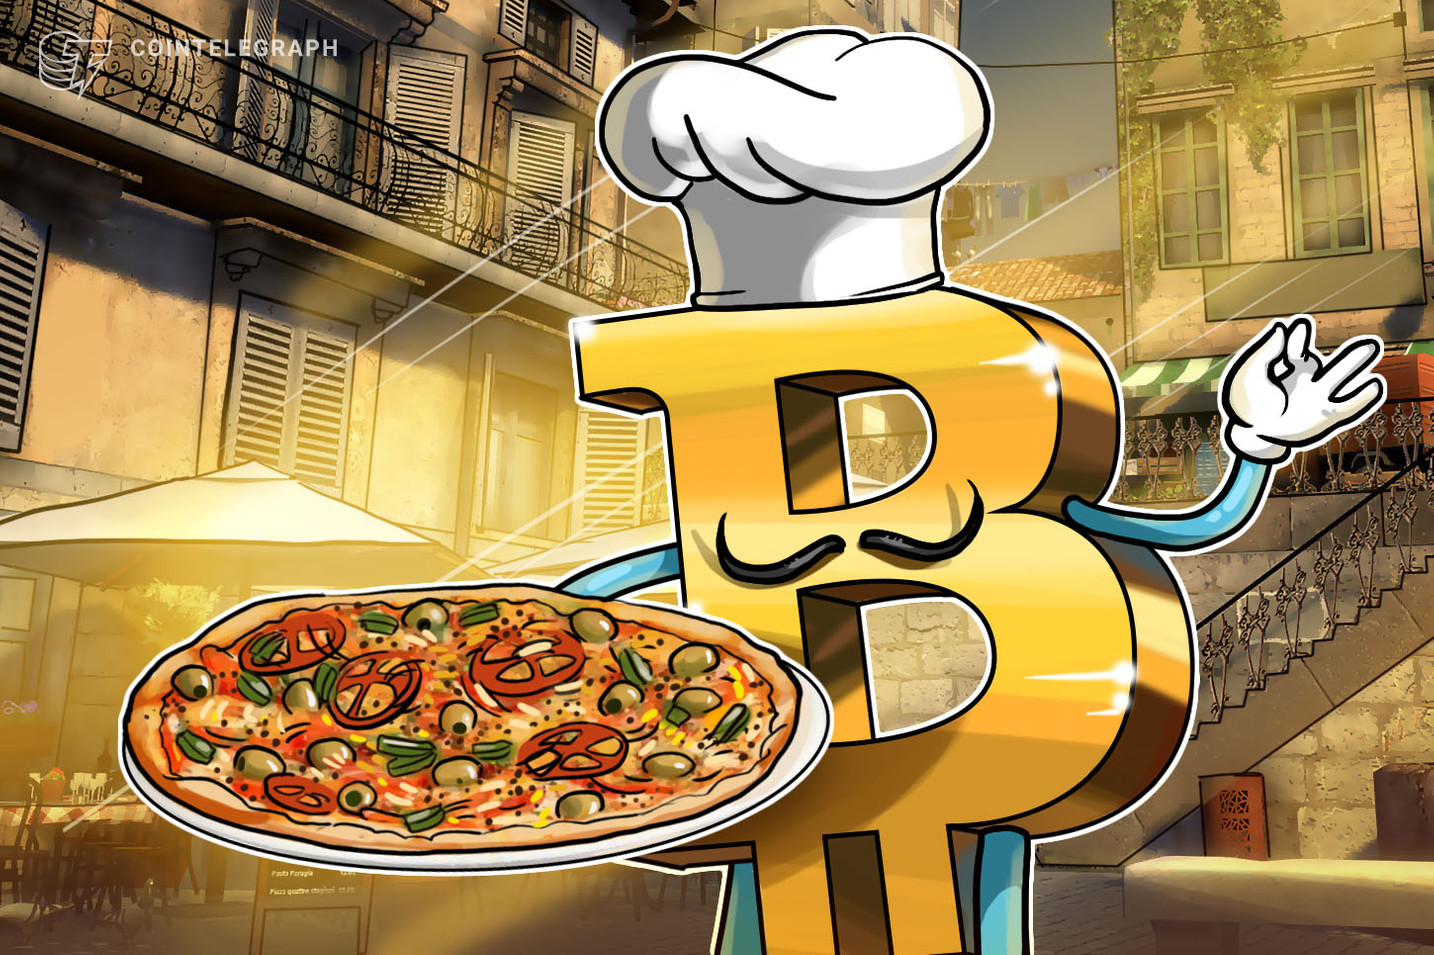 Bitcoin Pizza Day : il y a 12 ans une pizza était achetée pour 10 000 Bitcoin